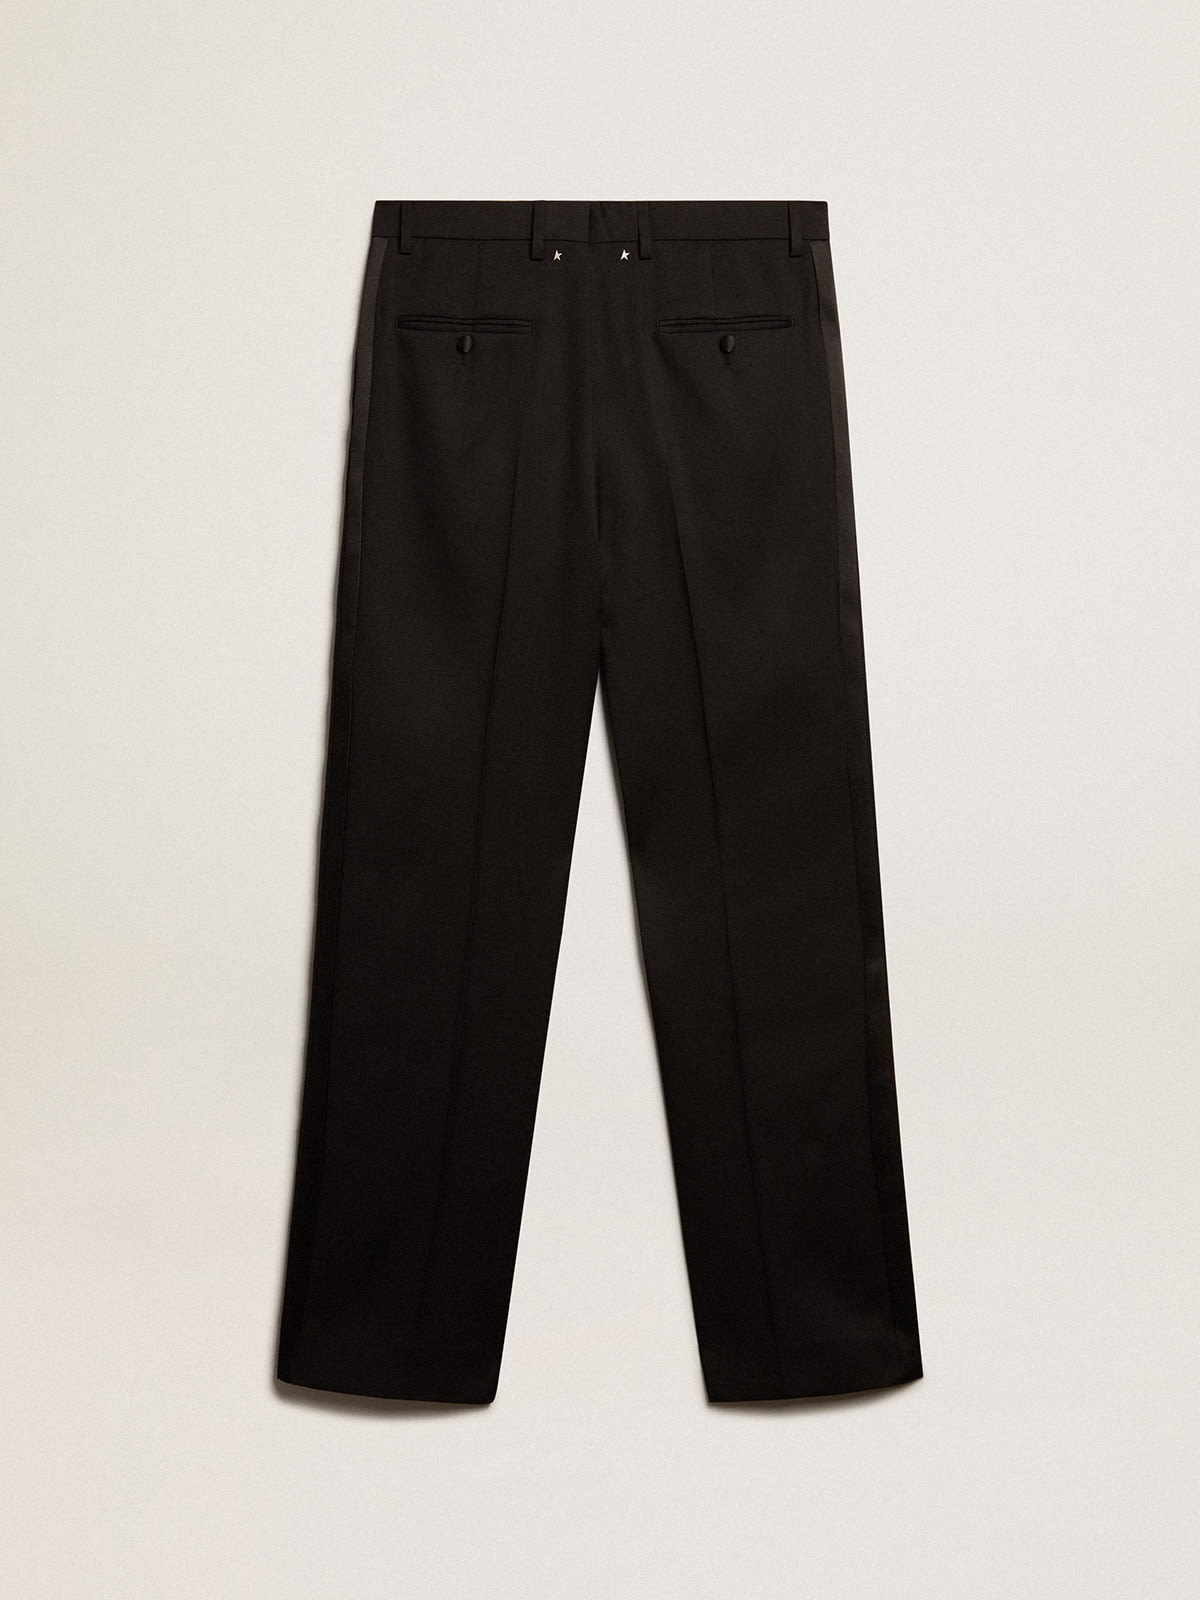 Men’s tuxedo pants in black wool gabardine - 5